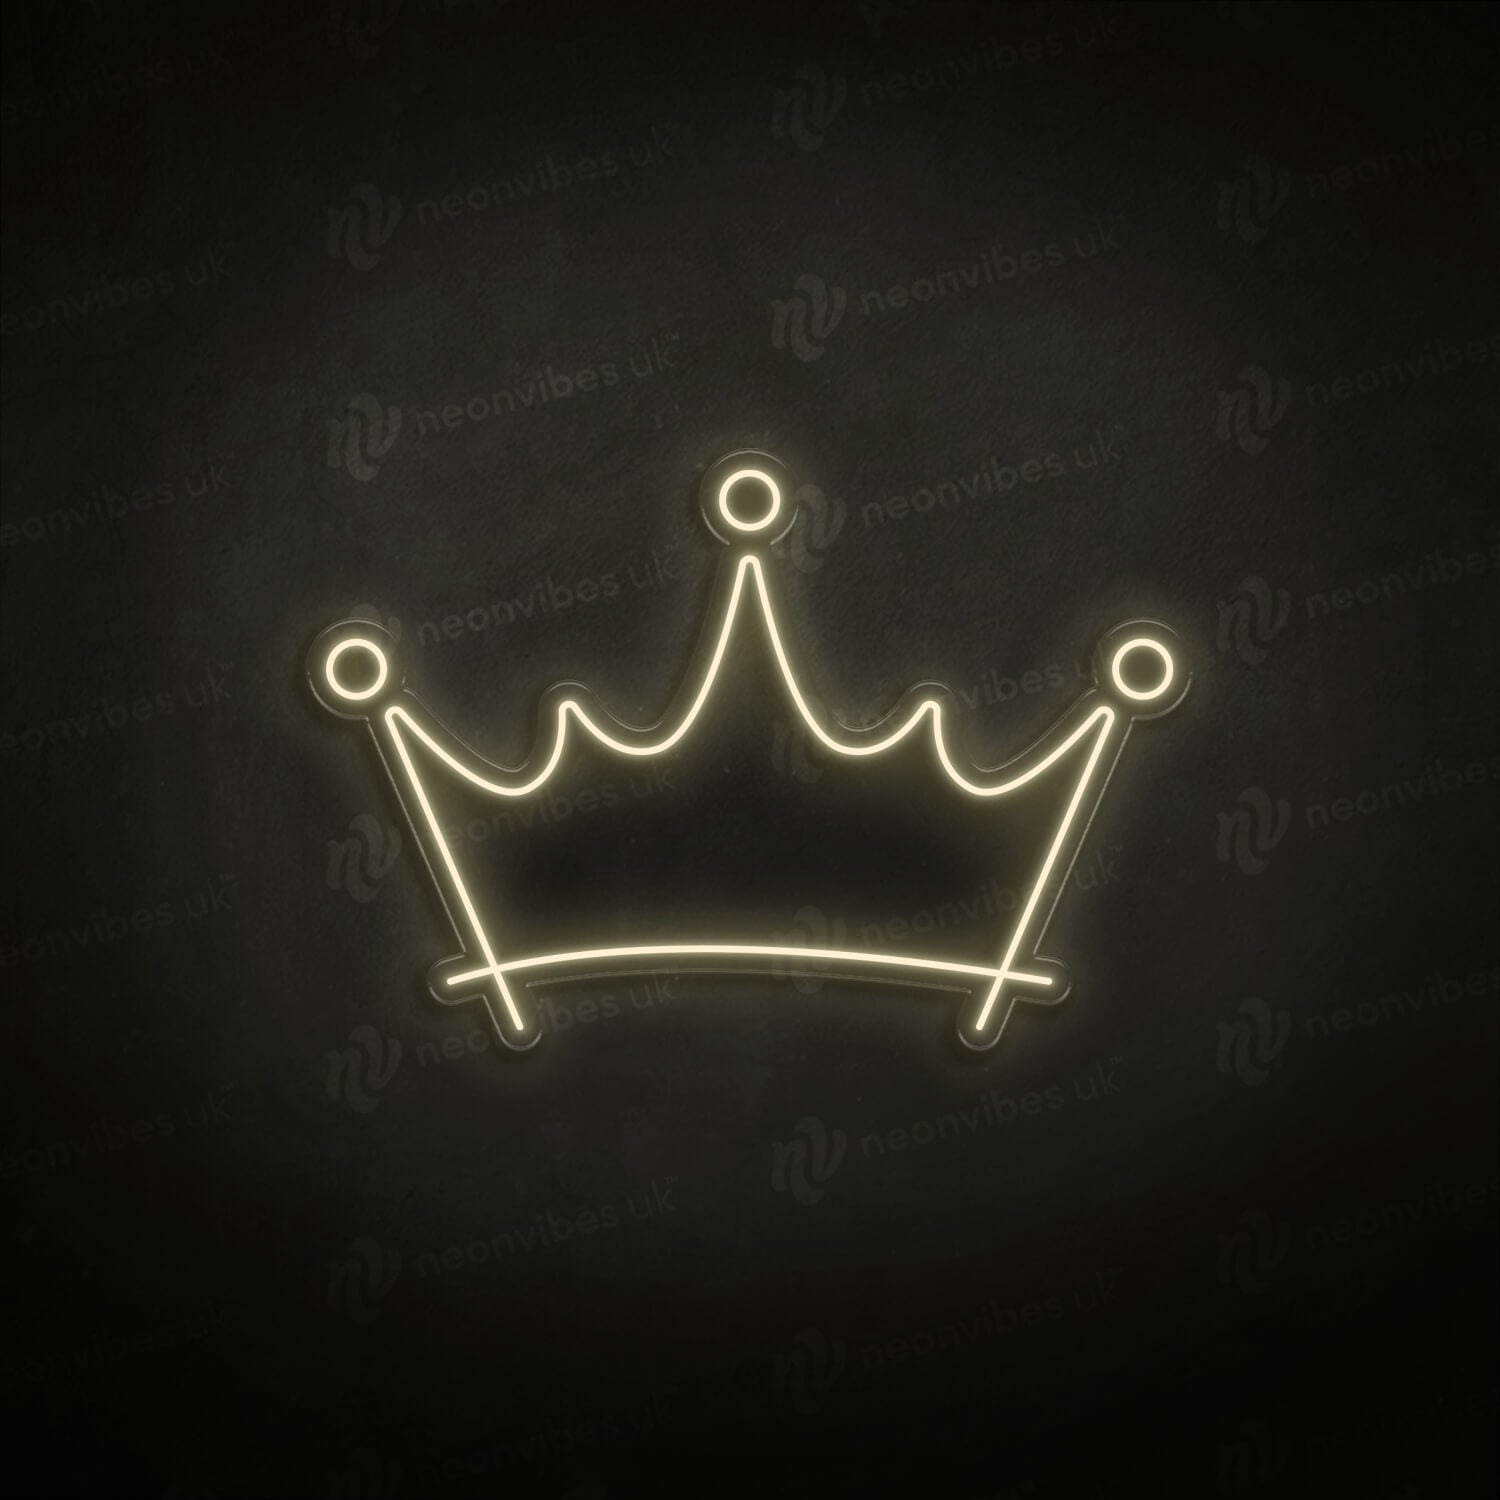 Kings Crown neon sign